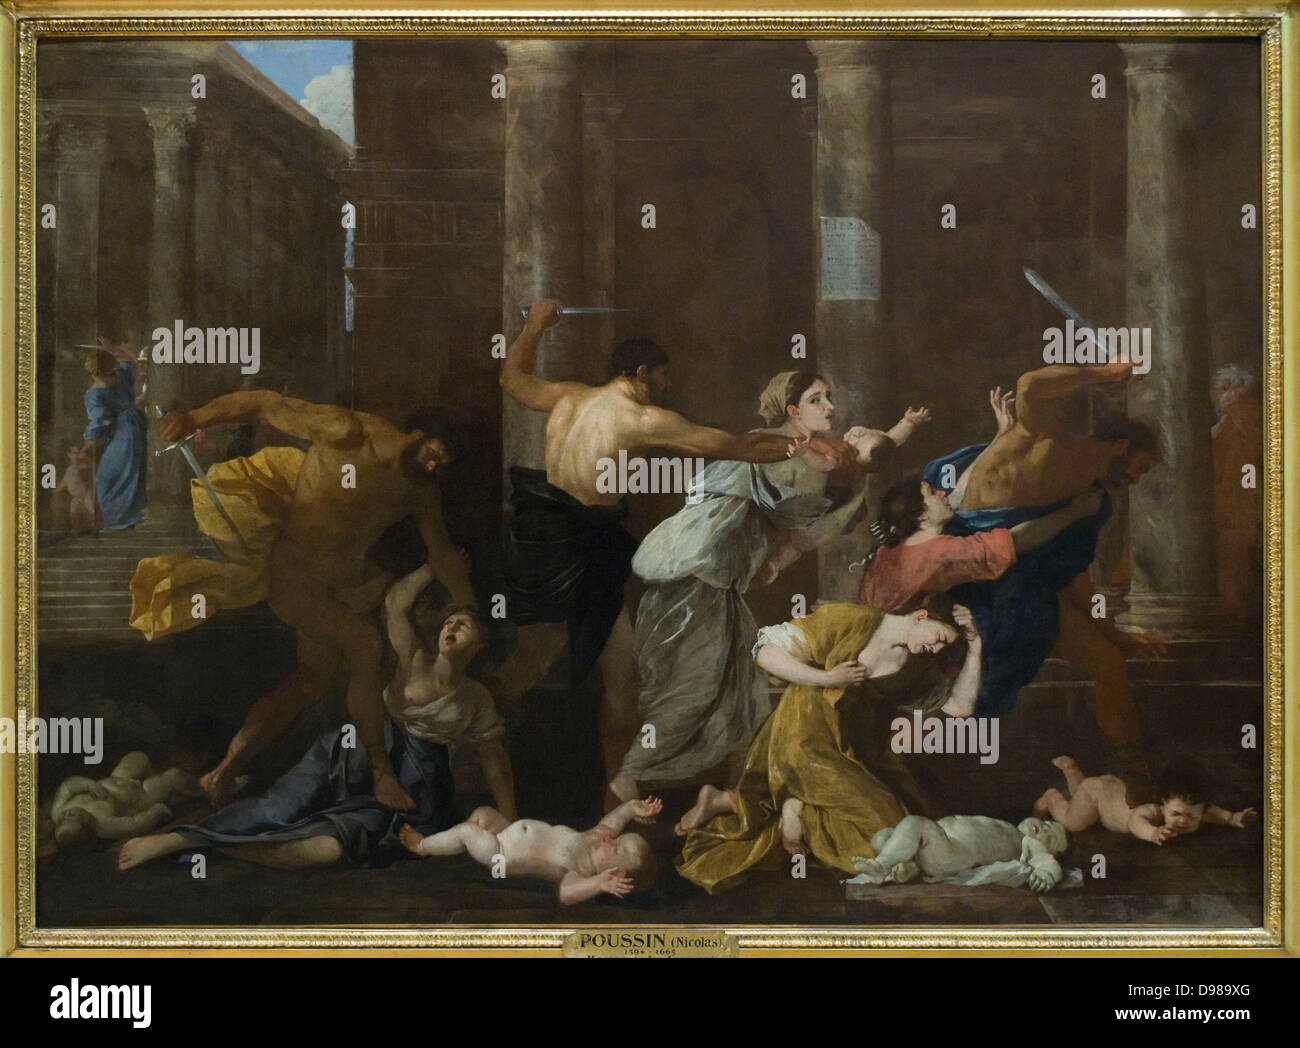 Nicolas Poussin Le massacre des innocents 1626-27 Oil on canvas Petit Palais Museum - Paris Stock Photo